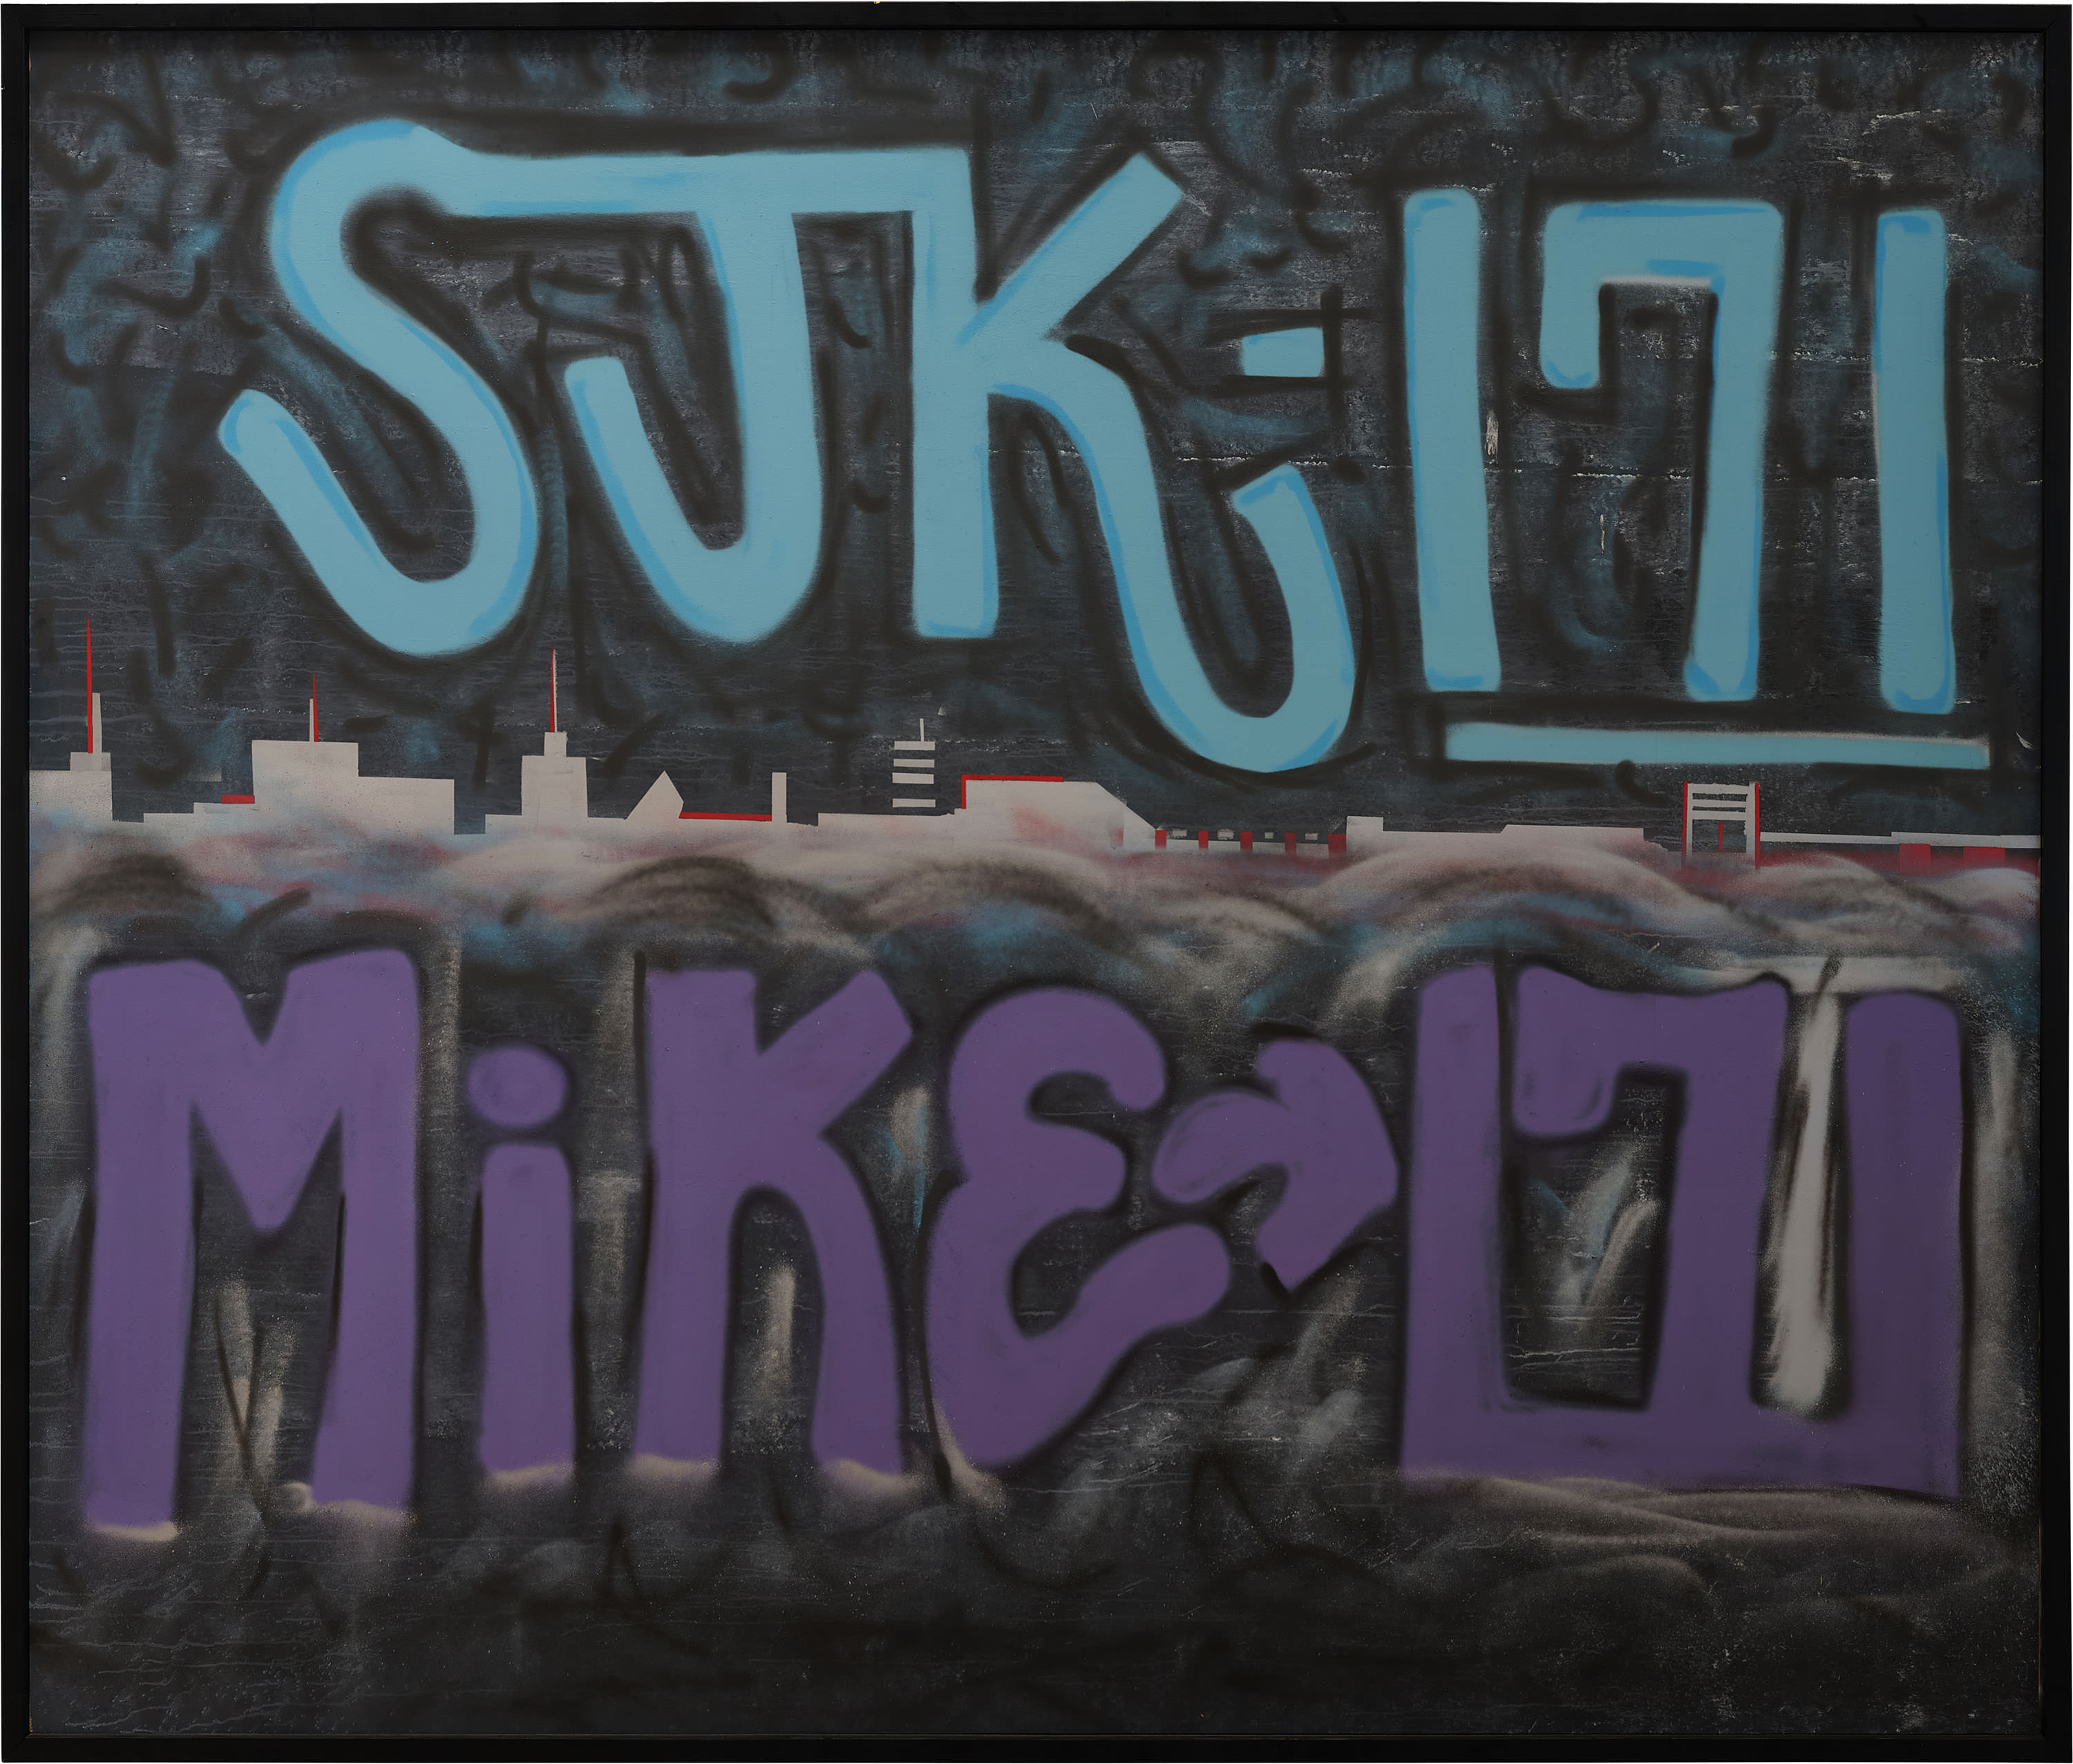 Mike 171 x SJK 171 graffiti Straat International Street Art Museum